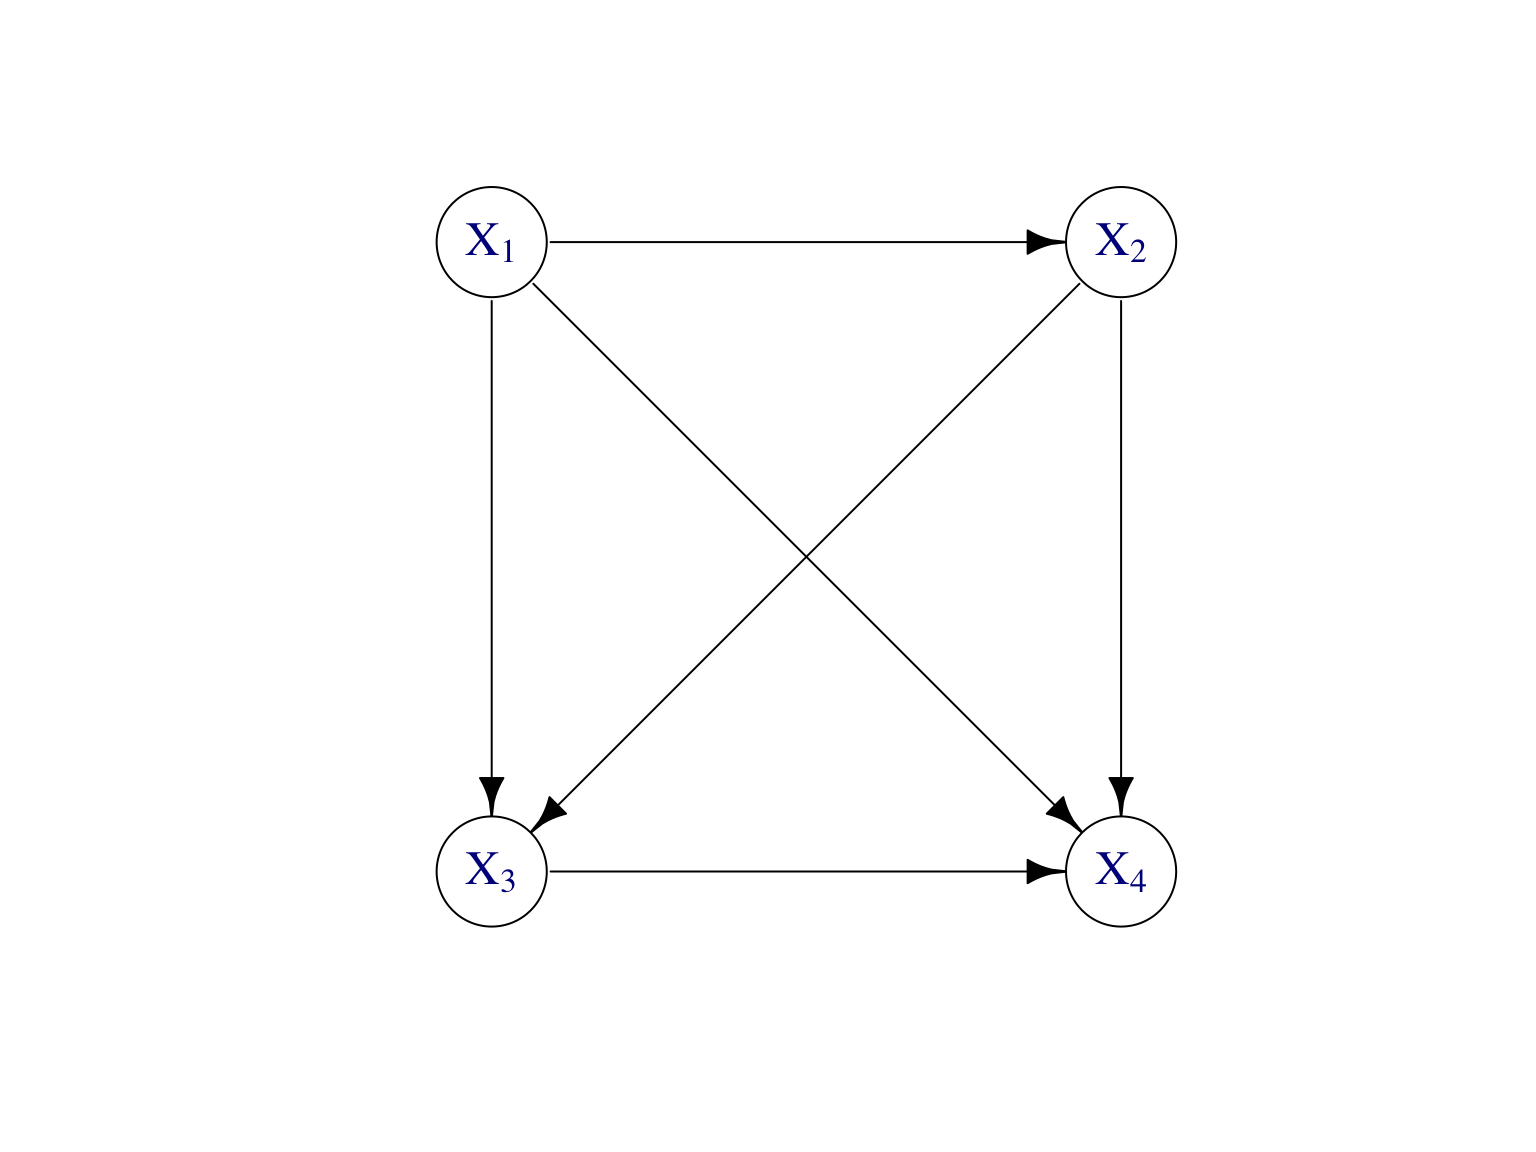 Modèle graphique dirigé pour représenter la factorisation de loi jointe donnée par (7.2) de n’importe quelle vecteur aléatoire \((X_1,\dots,X_4)\) de dimension \(d=4\).